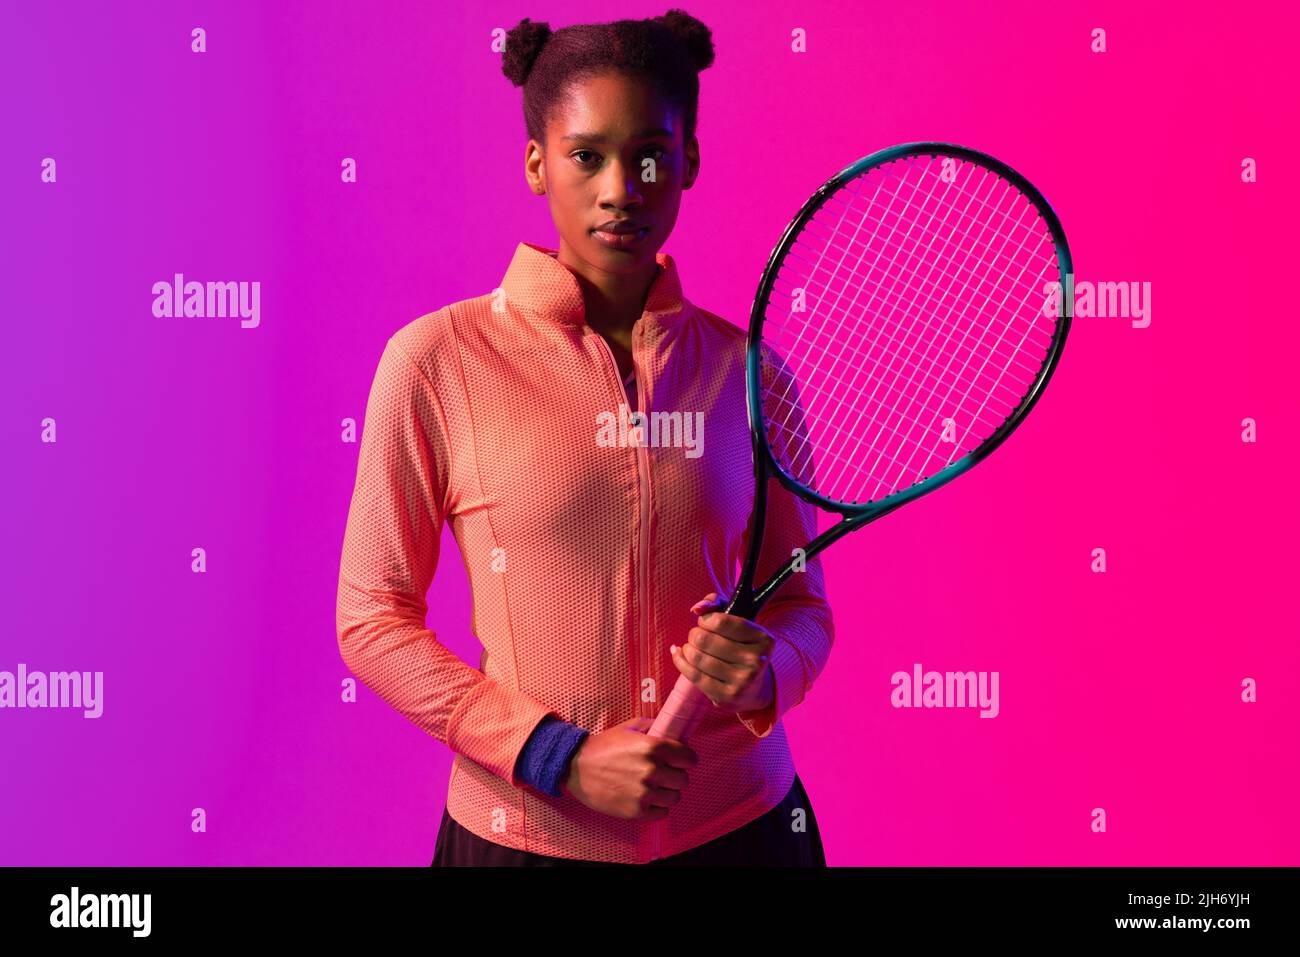 Image d'une joueuse de tennis afro-américaine avec raquette dans un éclairage rose fluo Banque D'Images